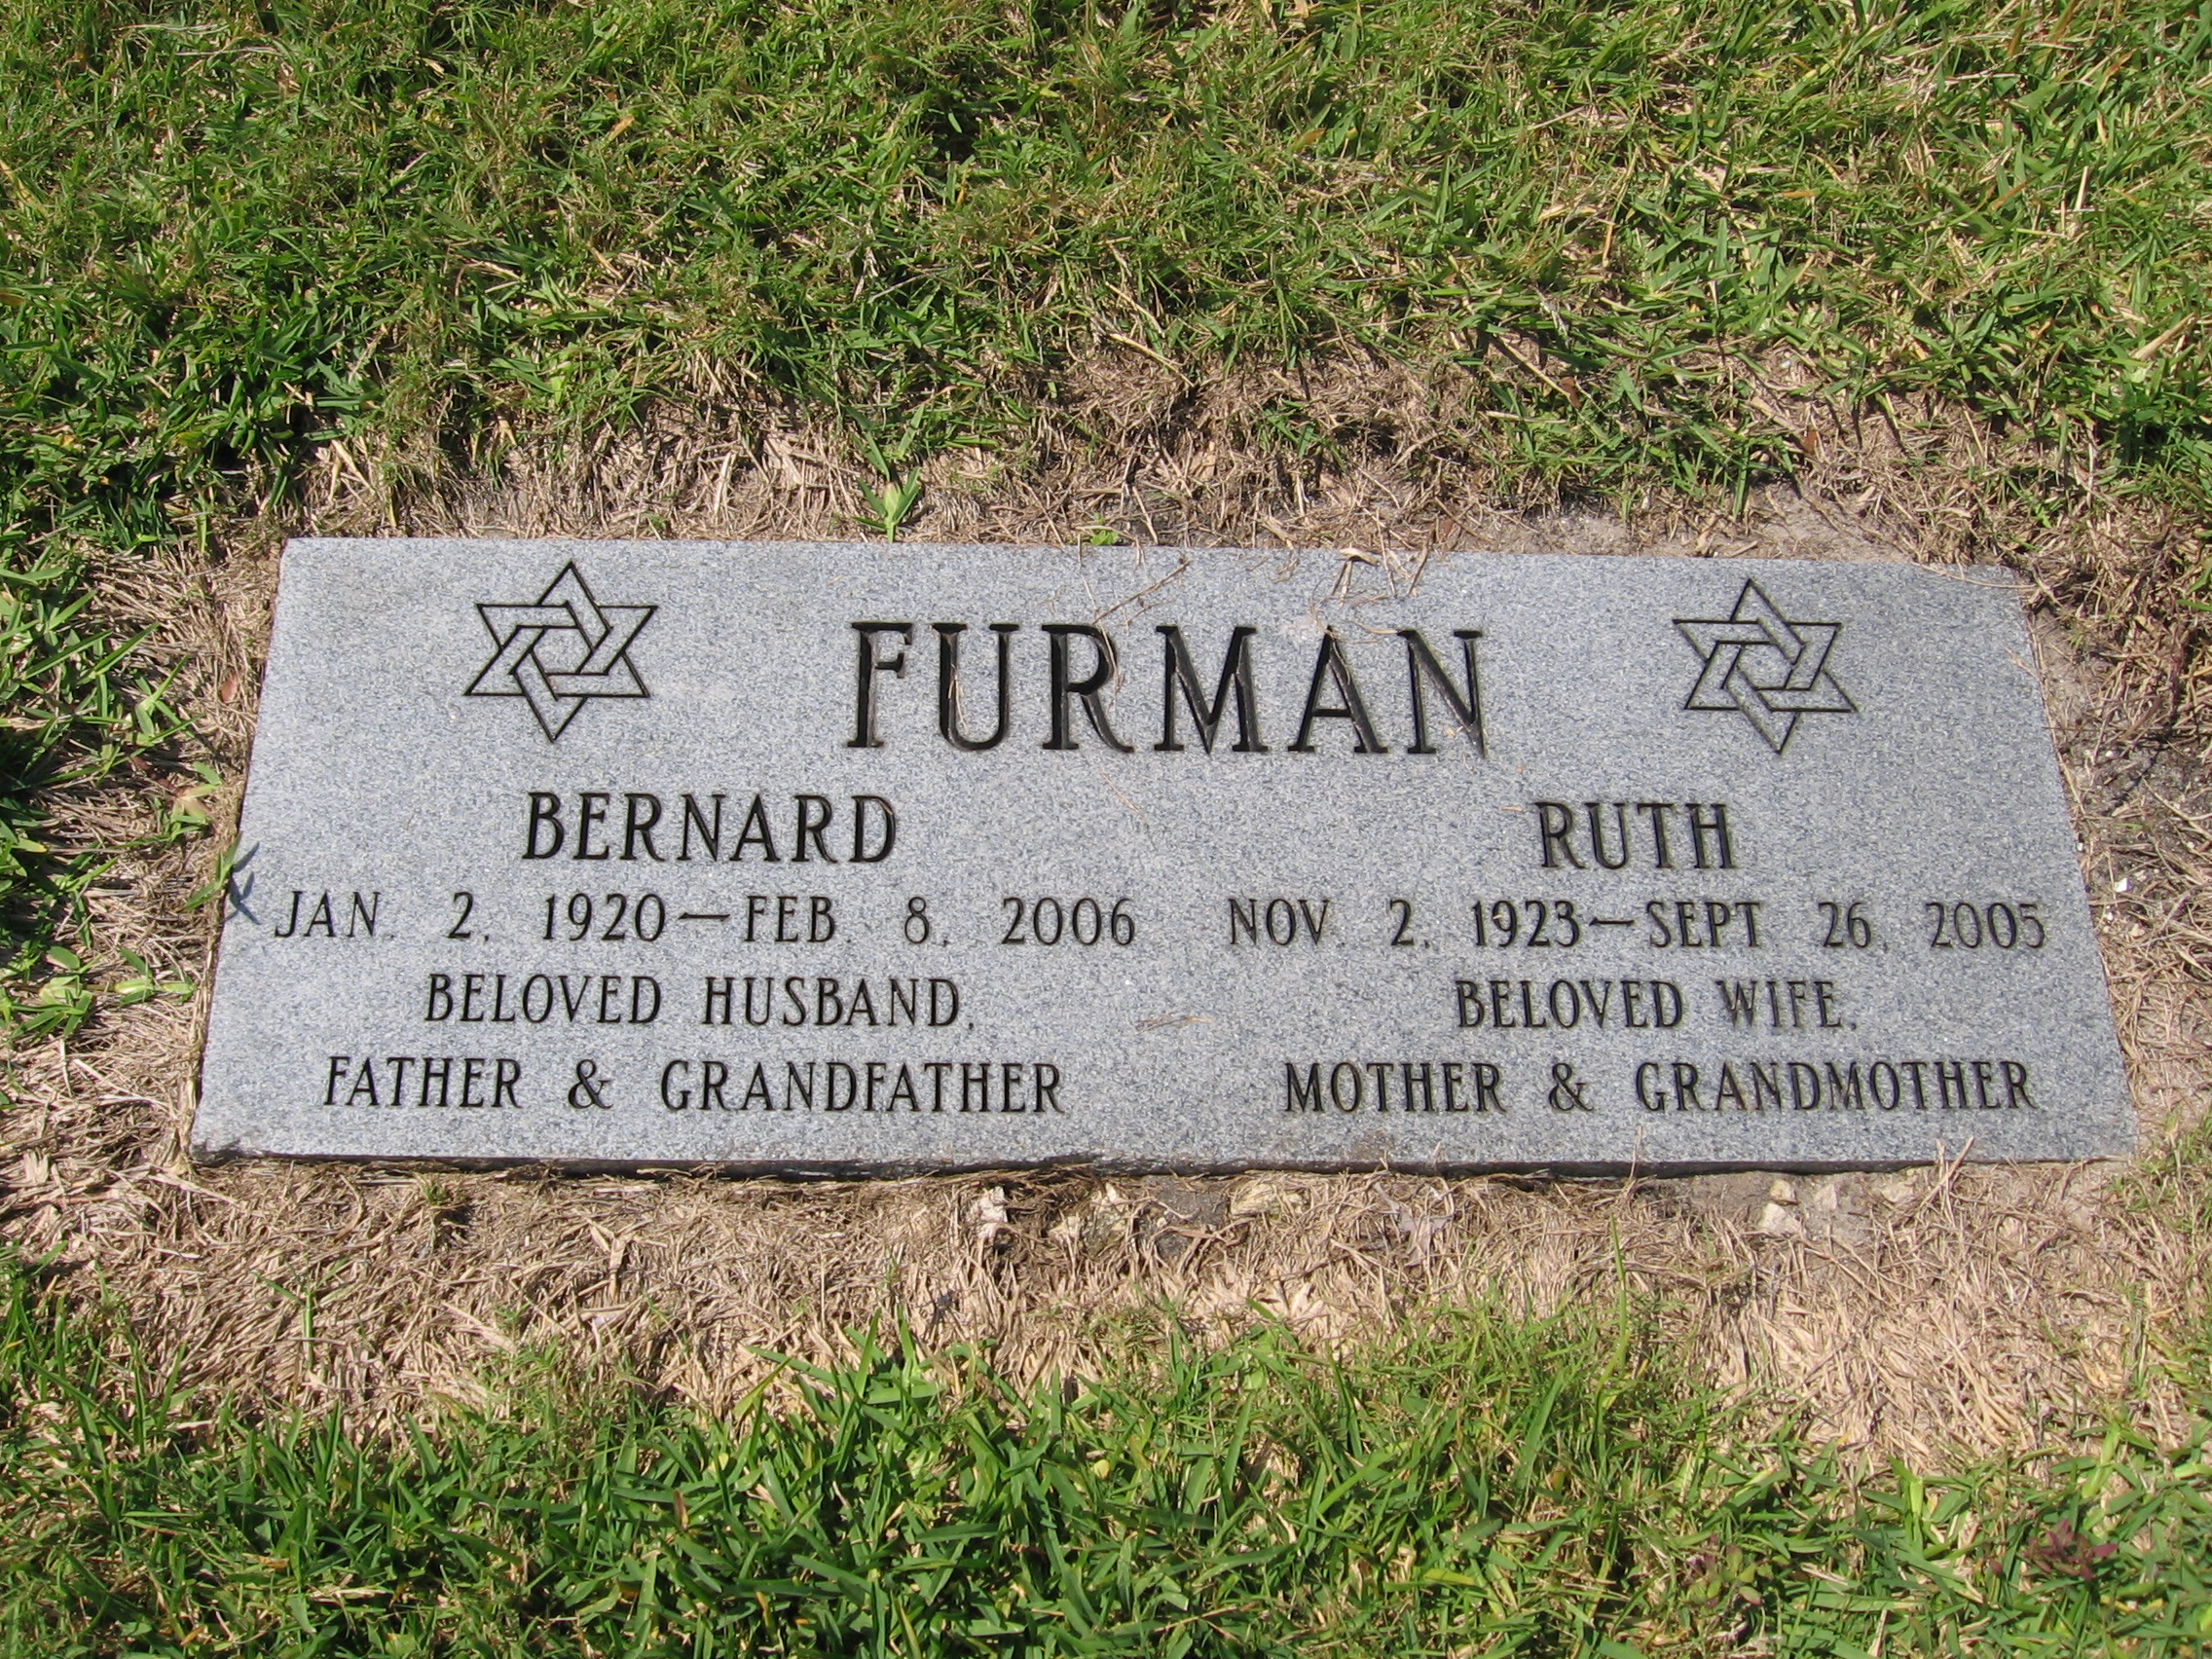 Bernard Furman